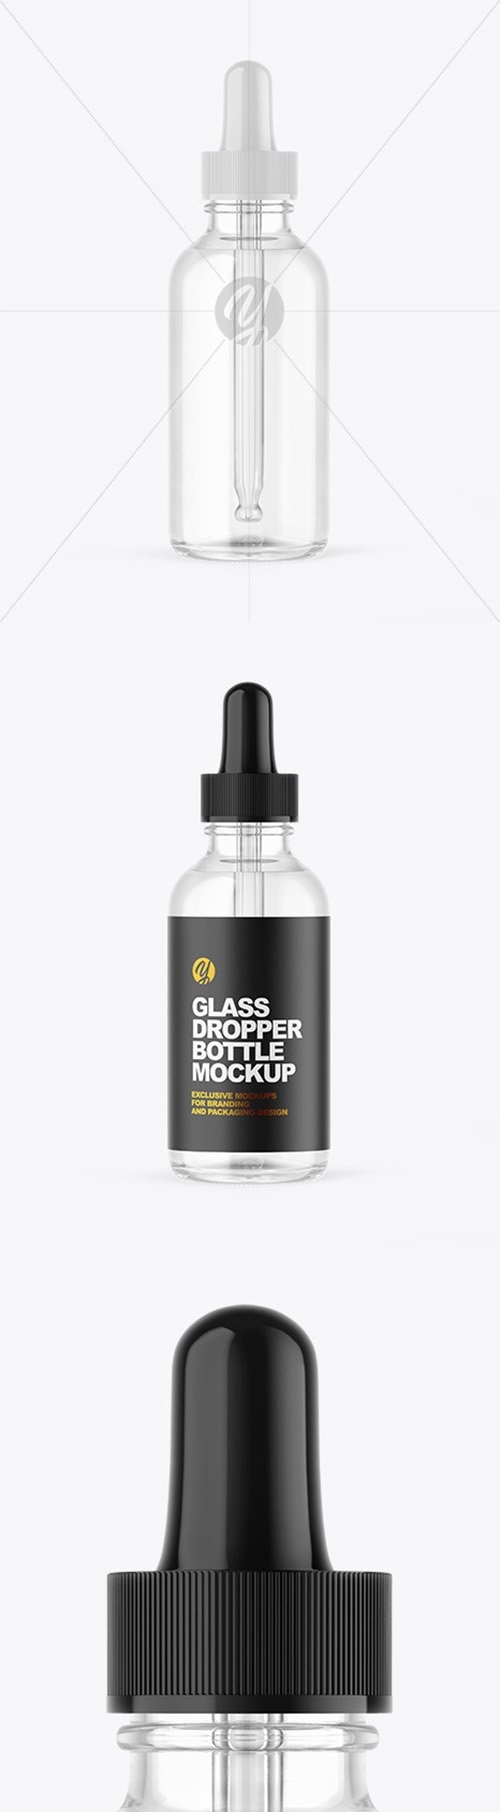 Clear Glass Dropper Bottle Mockup 66463